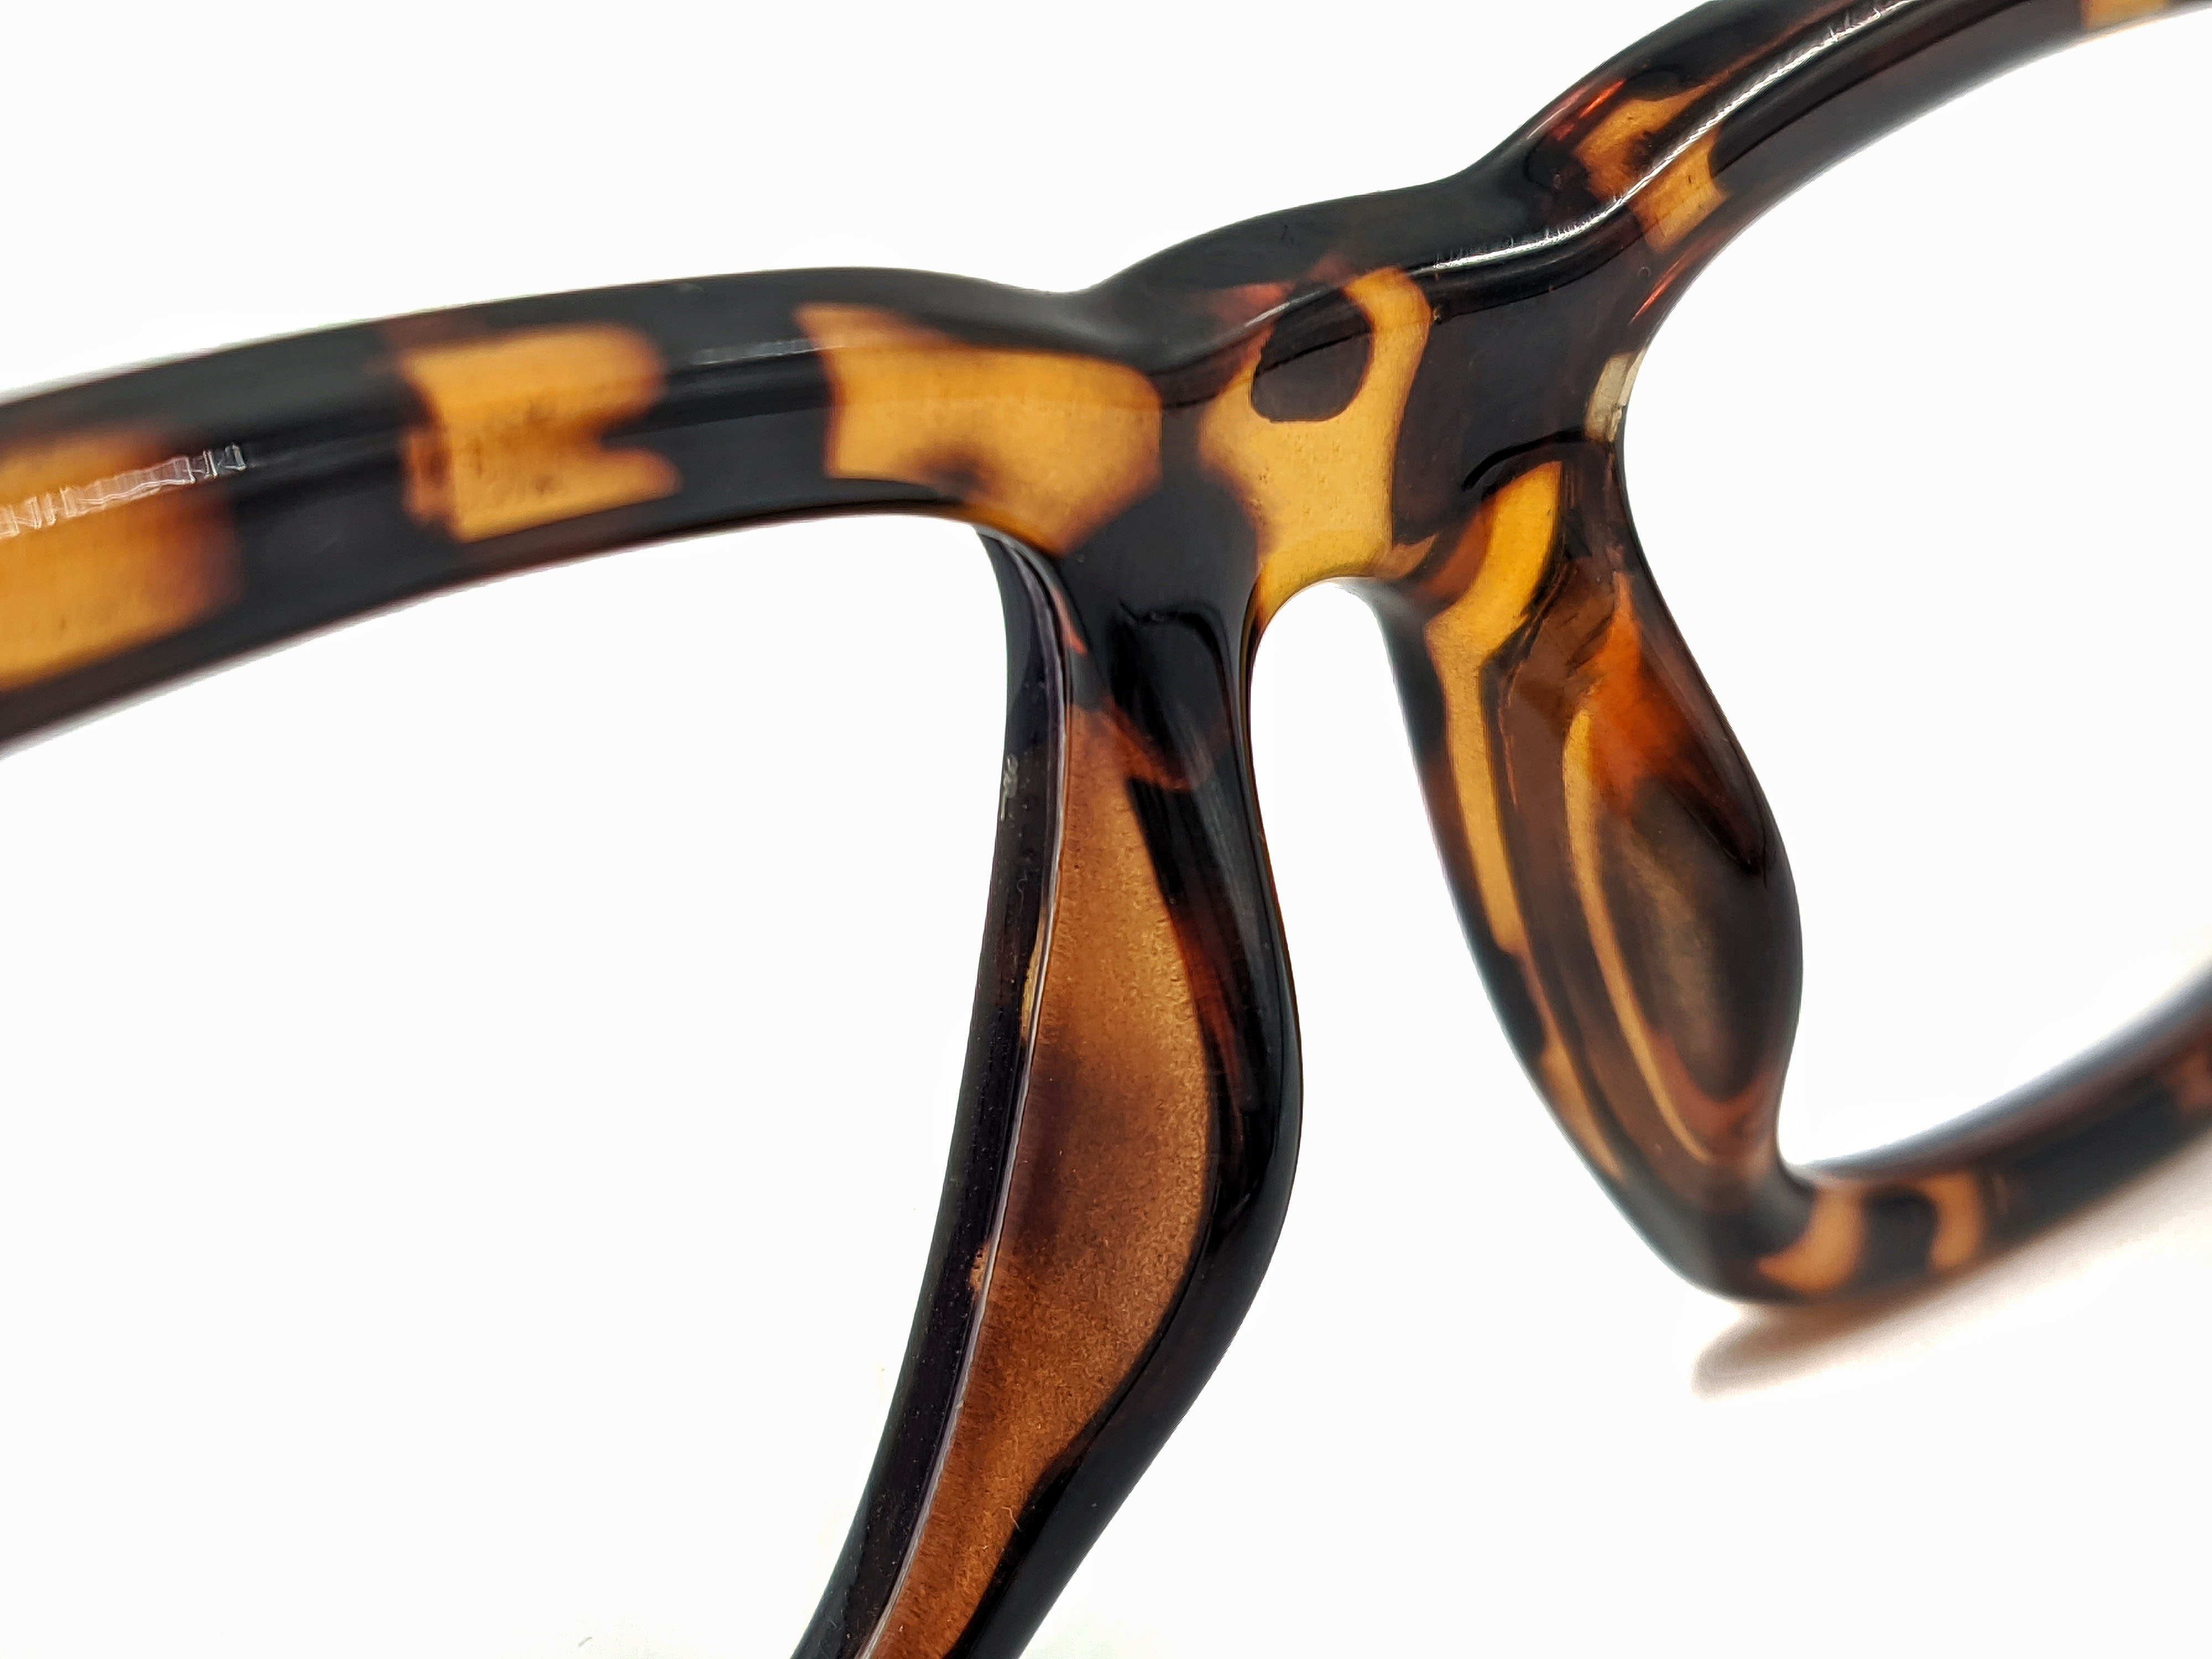 Nuevos marcos de anteojos cuadrados de cobre amarillo de gran tamaño Anti-blue light marco de anteojos 2022 mujeres hombres moda lujo clásico